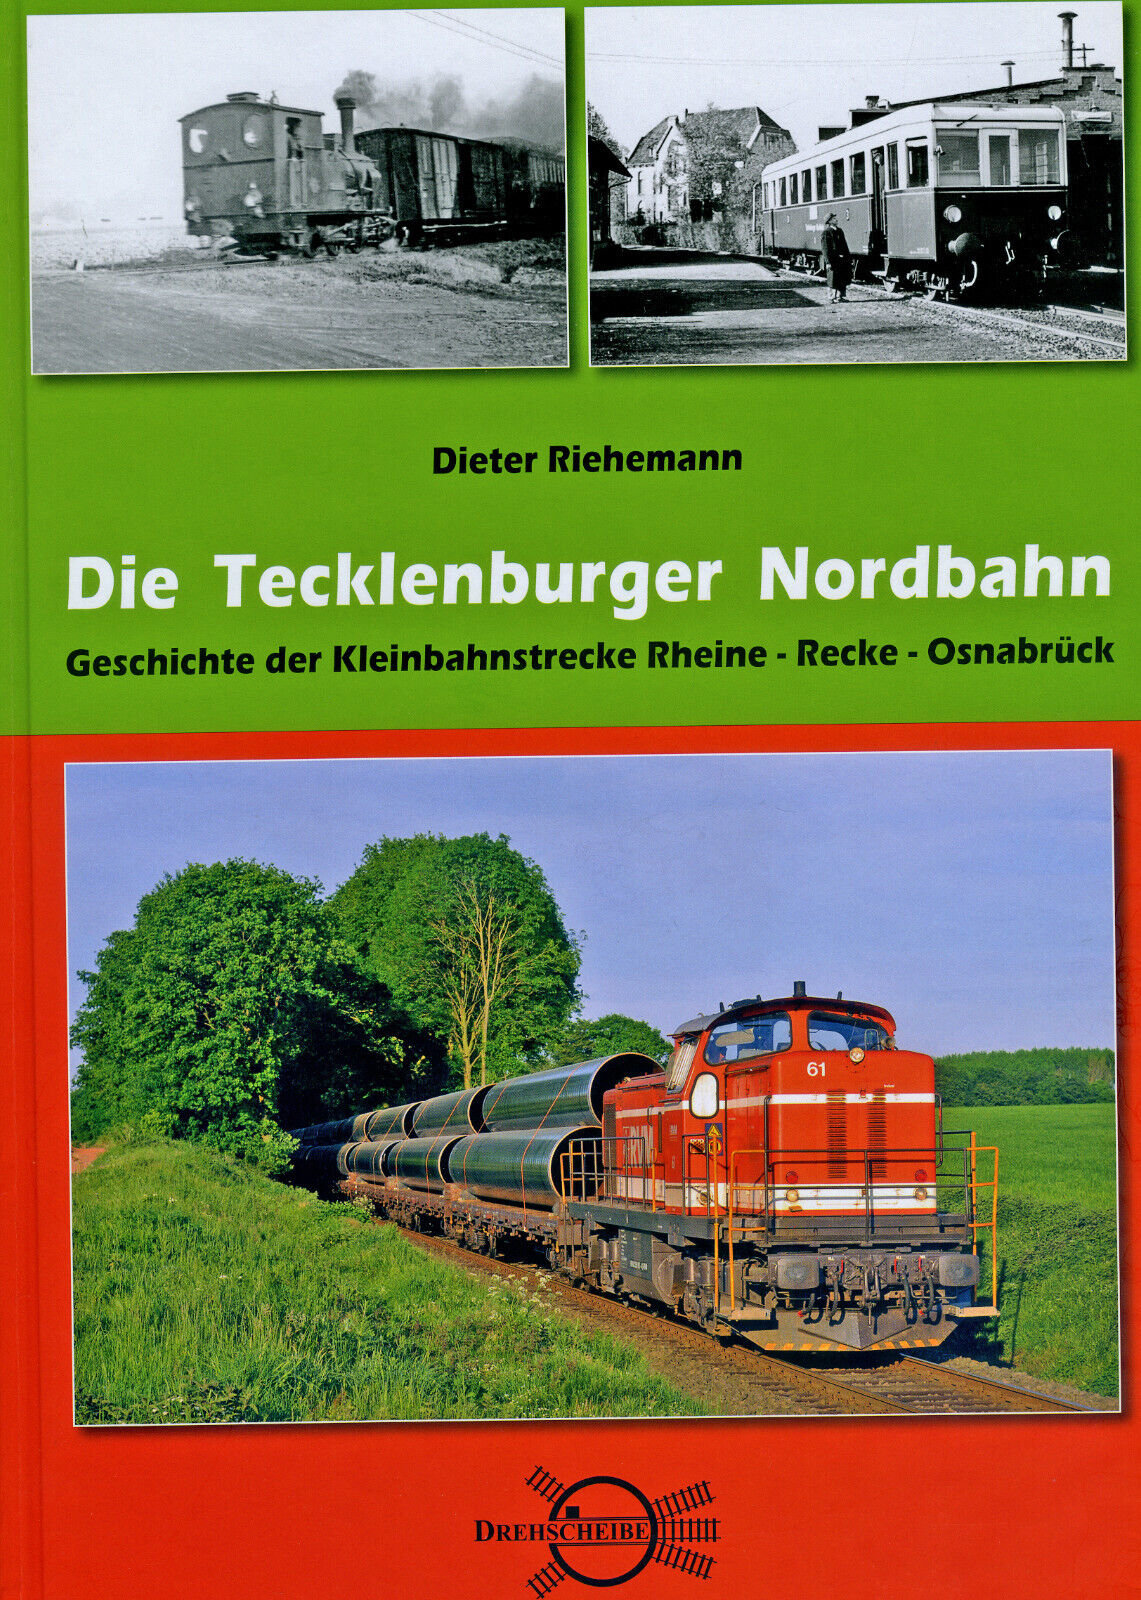 Die Tecklenburger Nordbahn-Geschichte Kleinbahnstrecke Rheine-Recke-Osnabrück - Dieter Riehemann